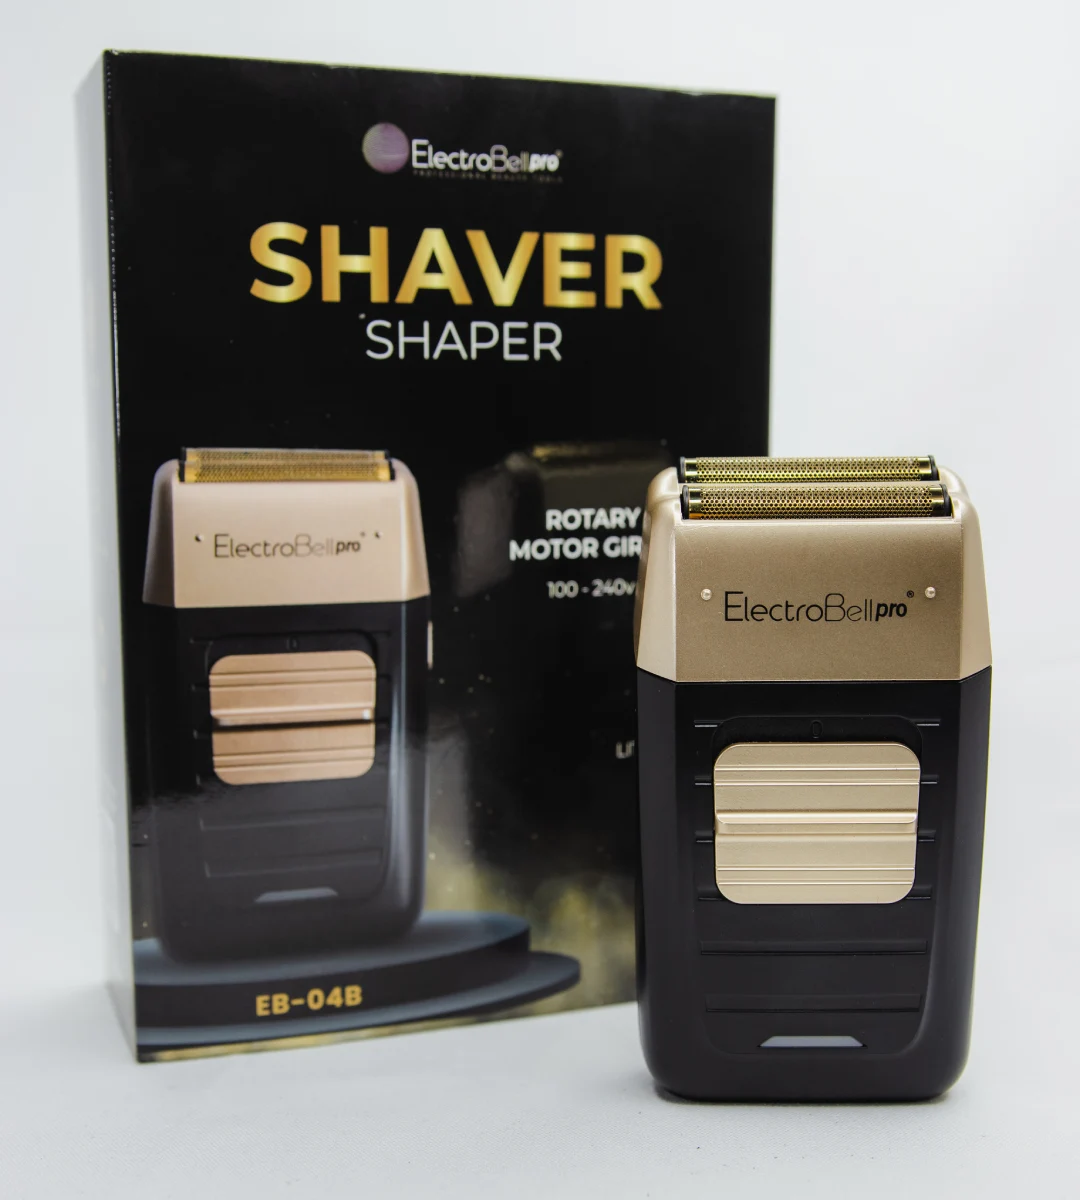 Shaver Shaper Profesional EB-04B